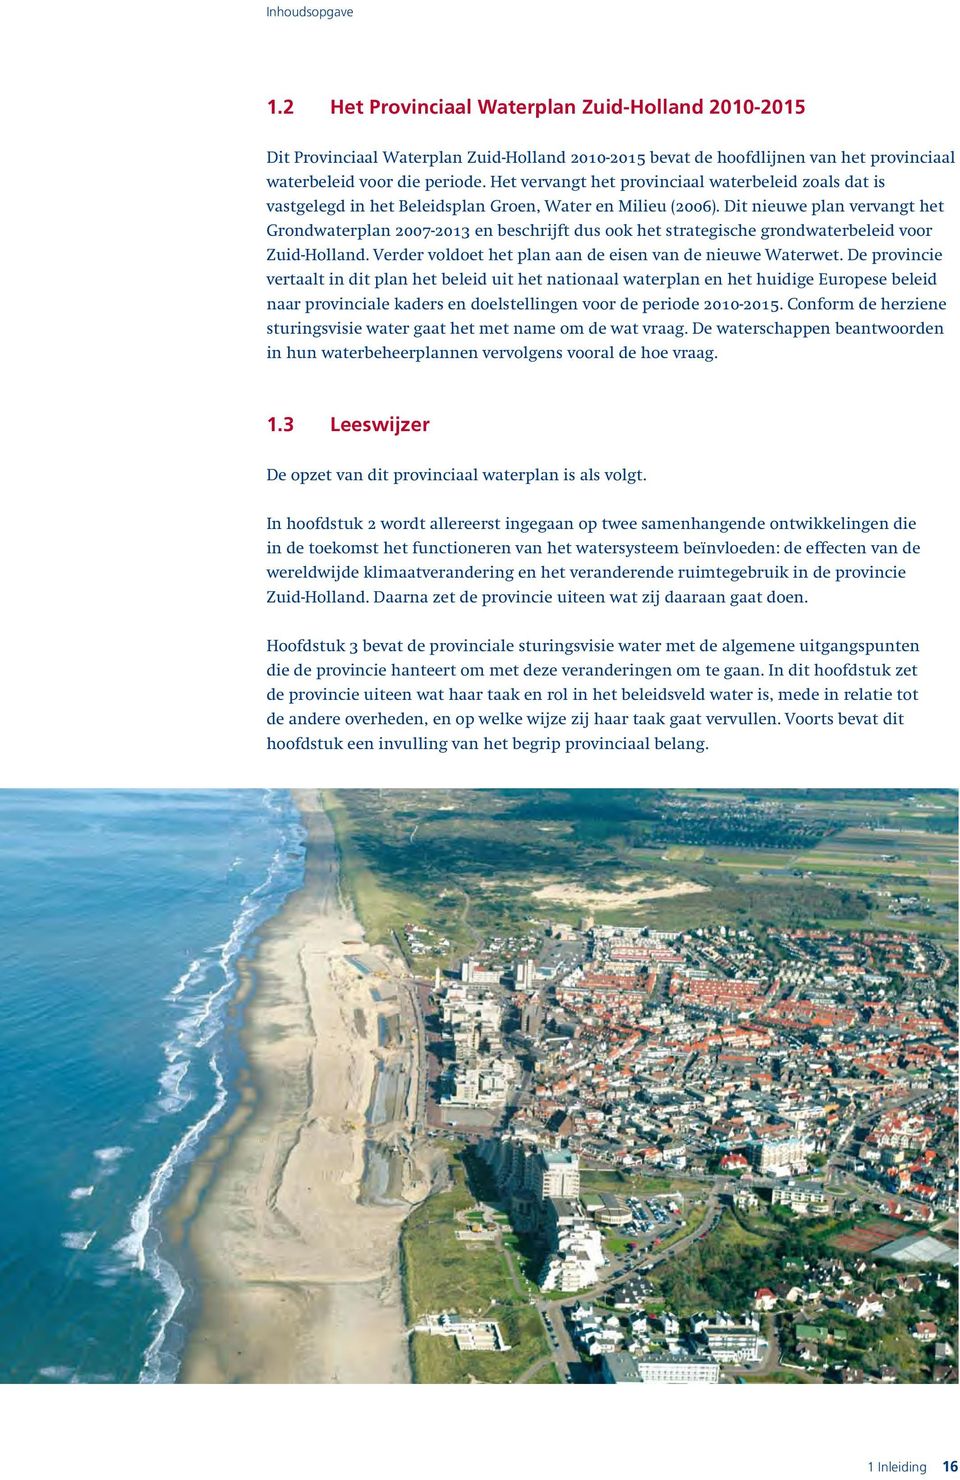 Dit nieuwe plan vervangt het Grondwaterplan 2007-2013 en beschrijft dus ook het strategische grondwaterbeleid voor Zuid-Holland. Verder voldoet het plan aan de eisen van de nieuwe Waterwet.